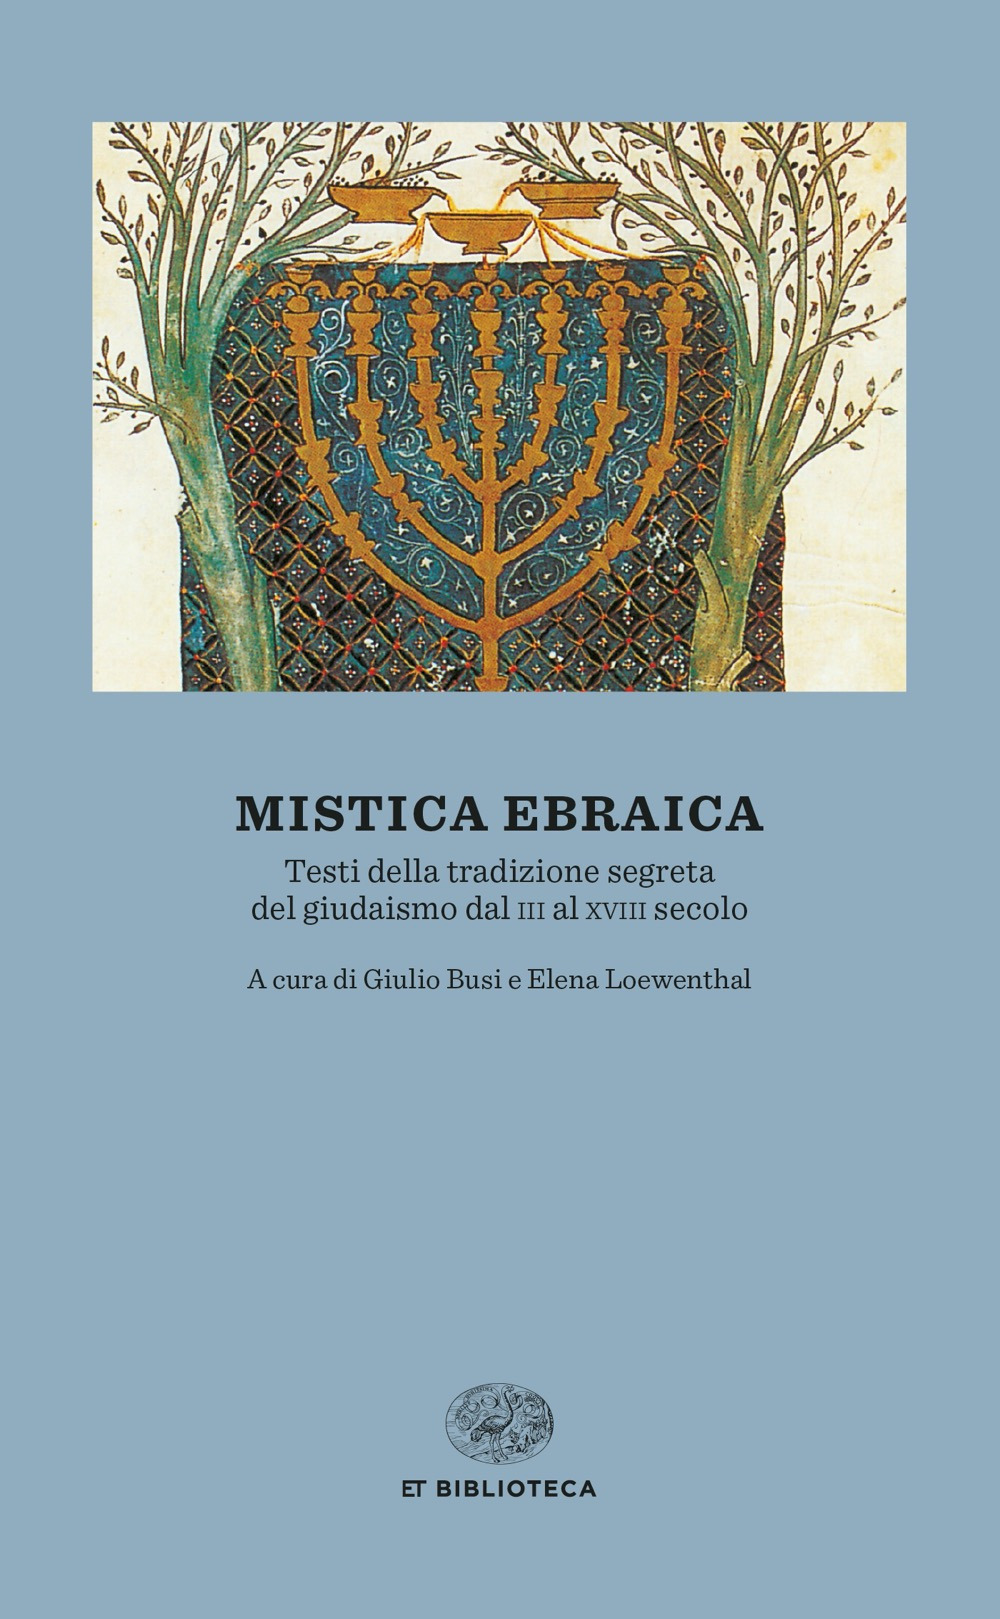 Image of Mistica ebraica. Testi della tradizione segreta del giudaismo dal III al XVIII secolo